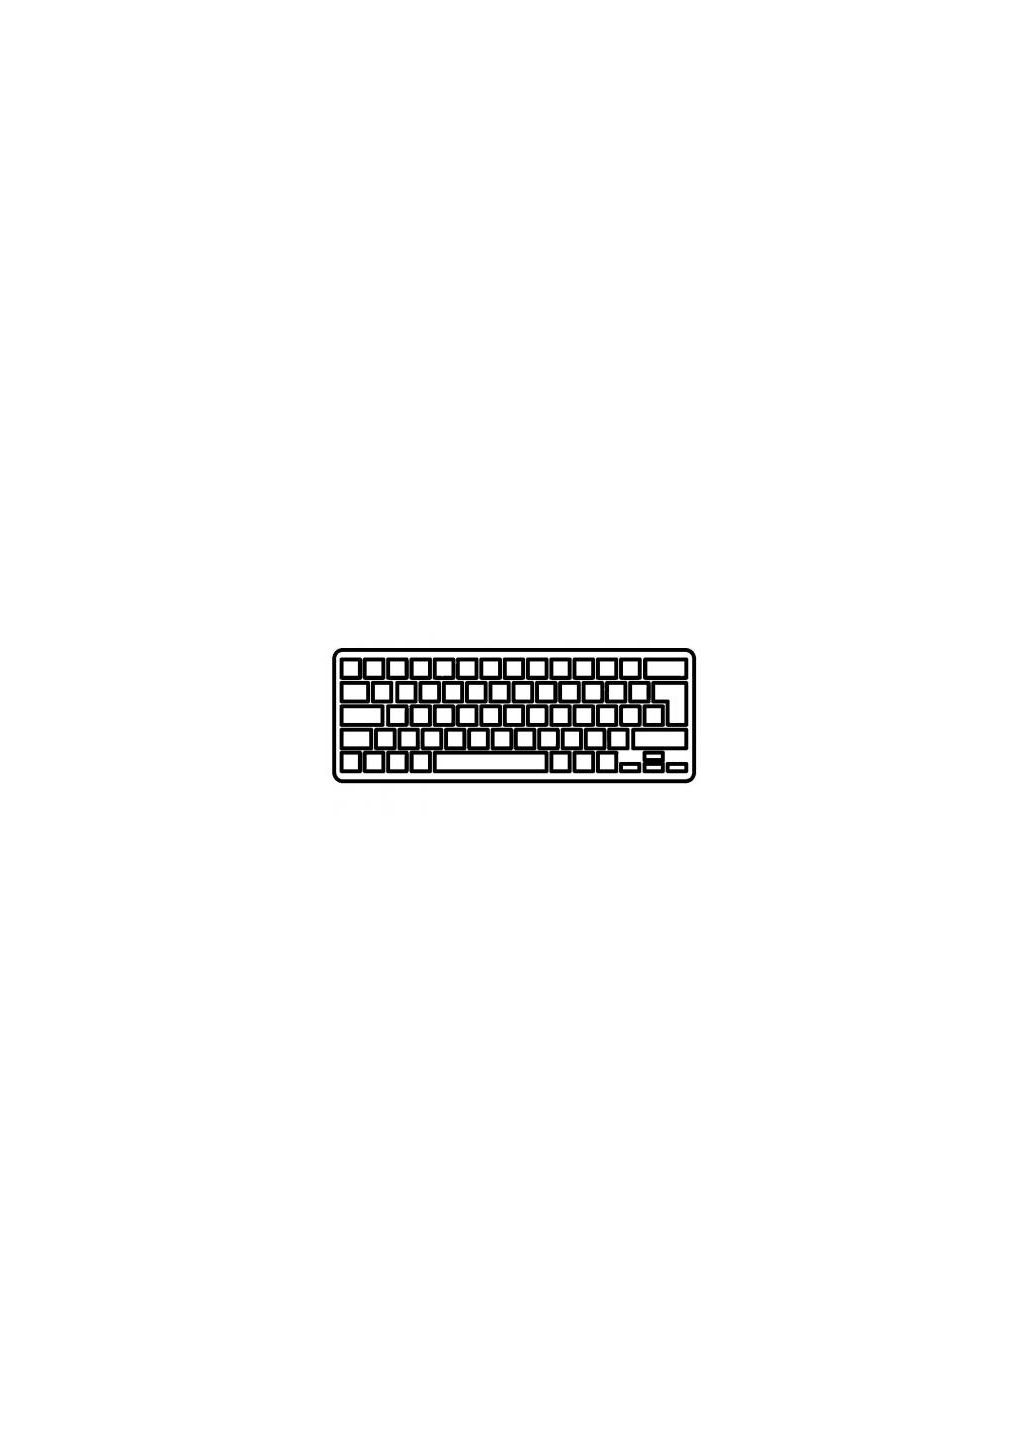 Клавиатура ноутбука Eee PC 1018P black,UA/US в сборе,black,frame,PWR.BTN (A43699) Asus eee pc 1018p black, ua/us в сборе, black, frame, pwr.b (276706863)